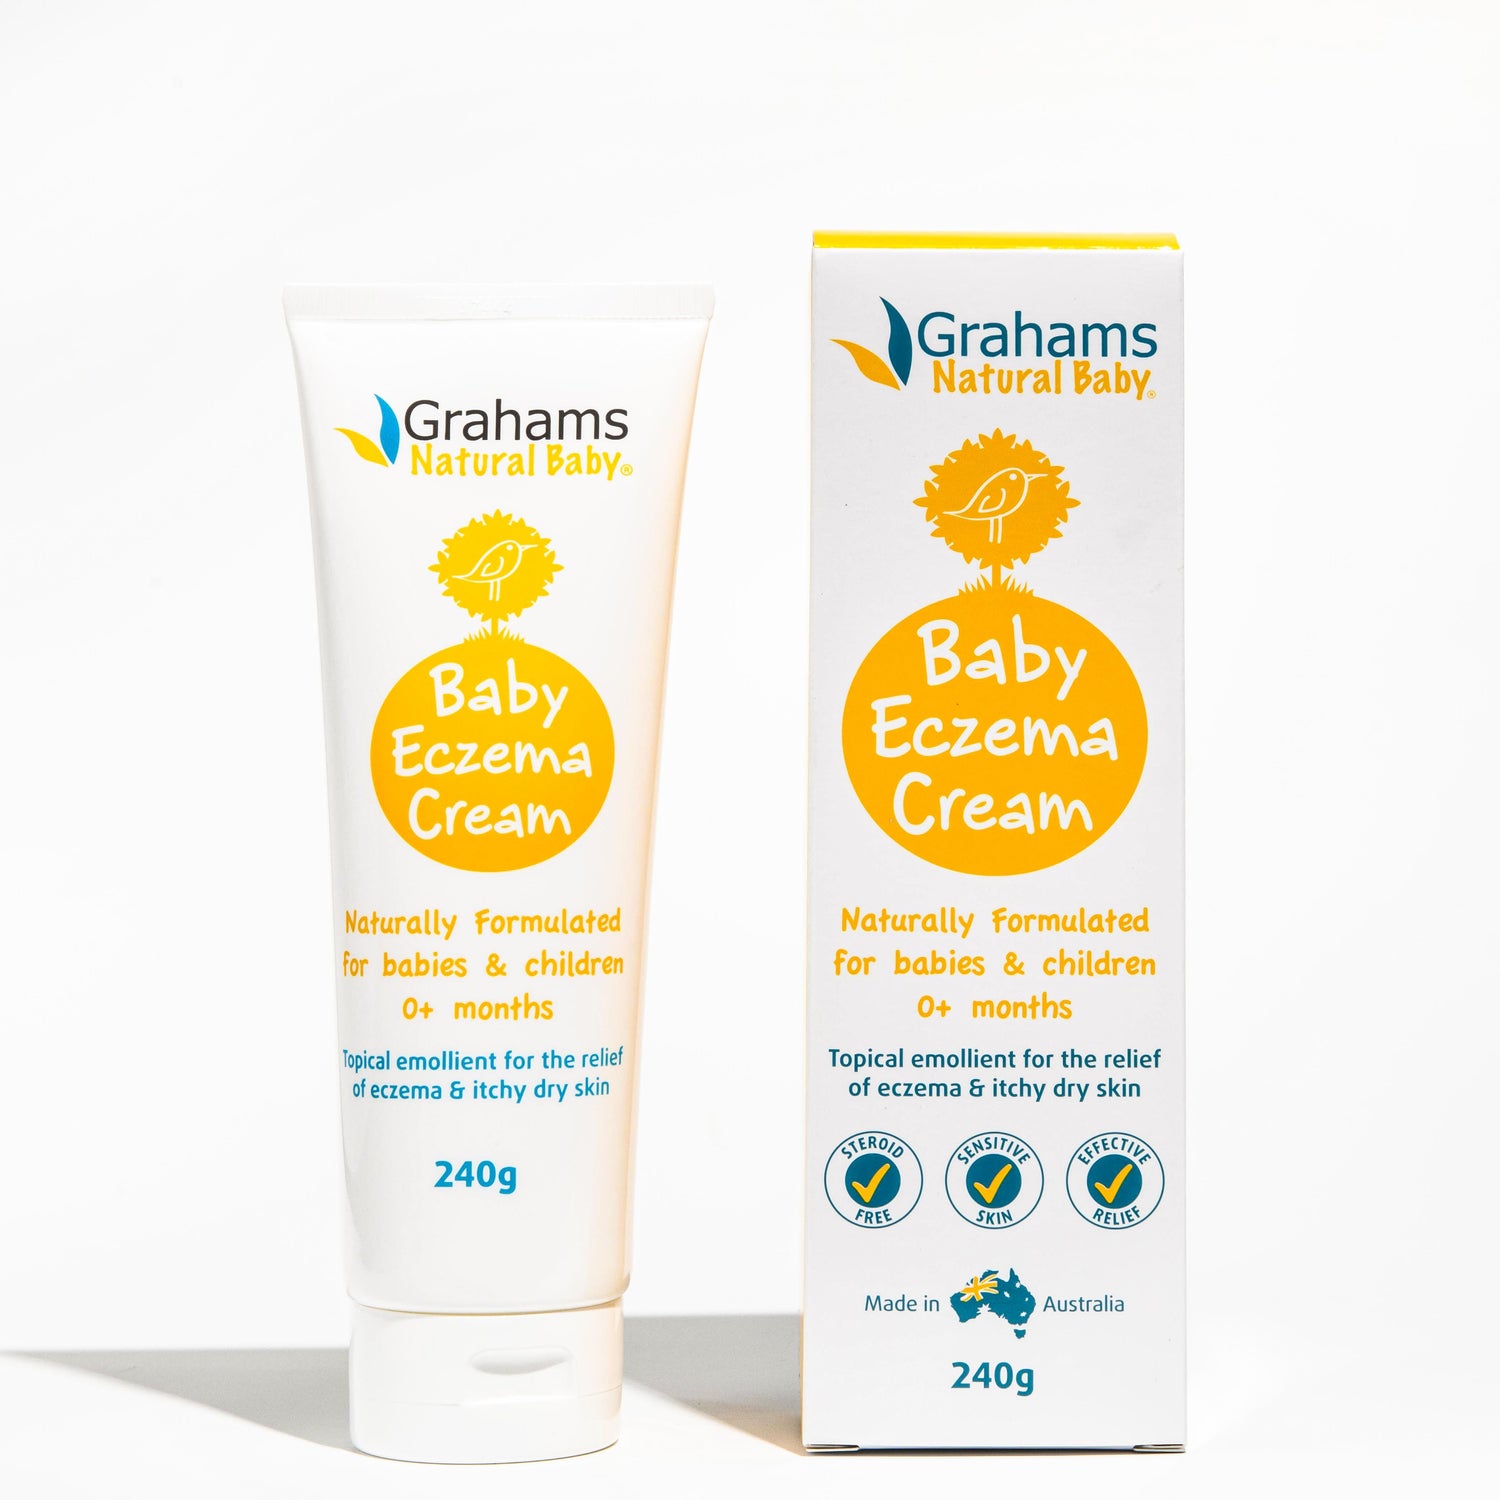 Natural Baby Eczema Cream